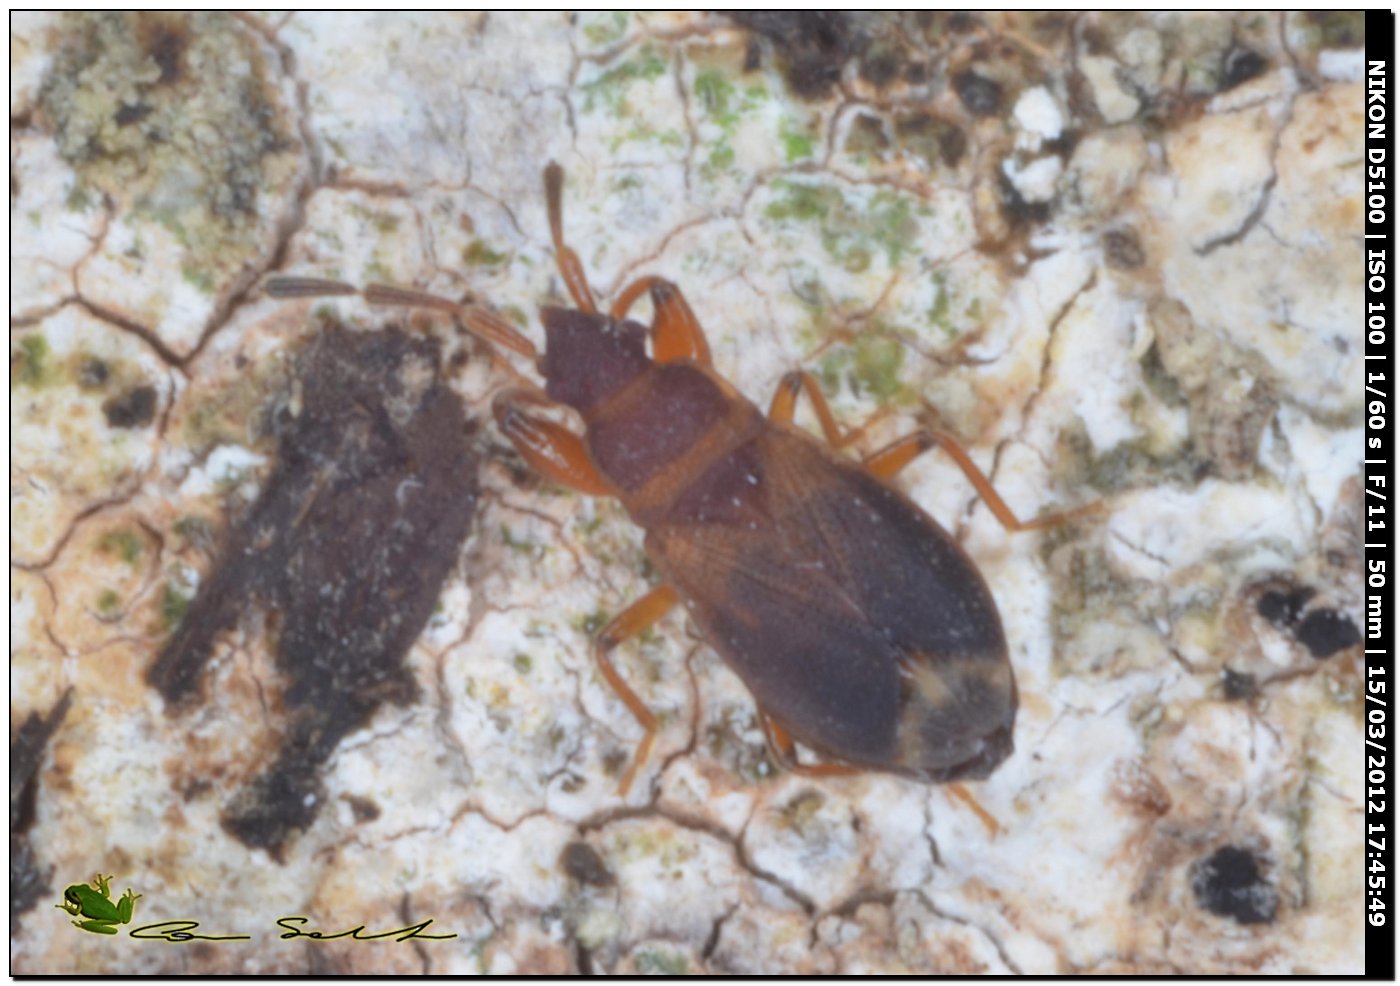 Lygaeidae: Notochilus ferrugineus della Sardegna (SS)